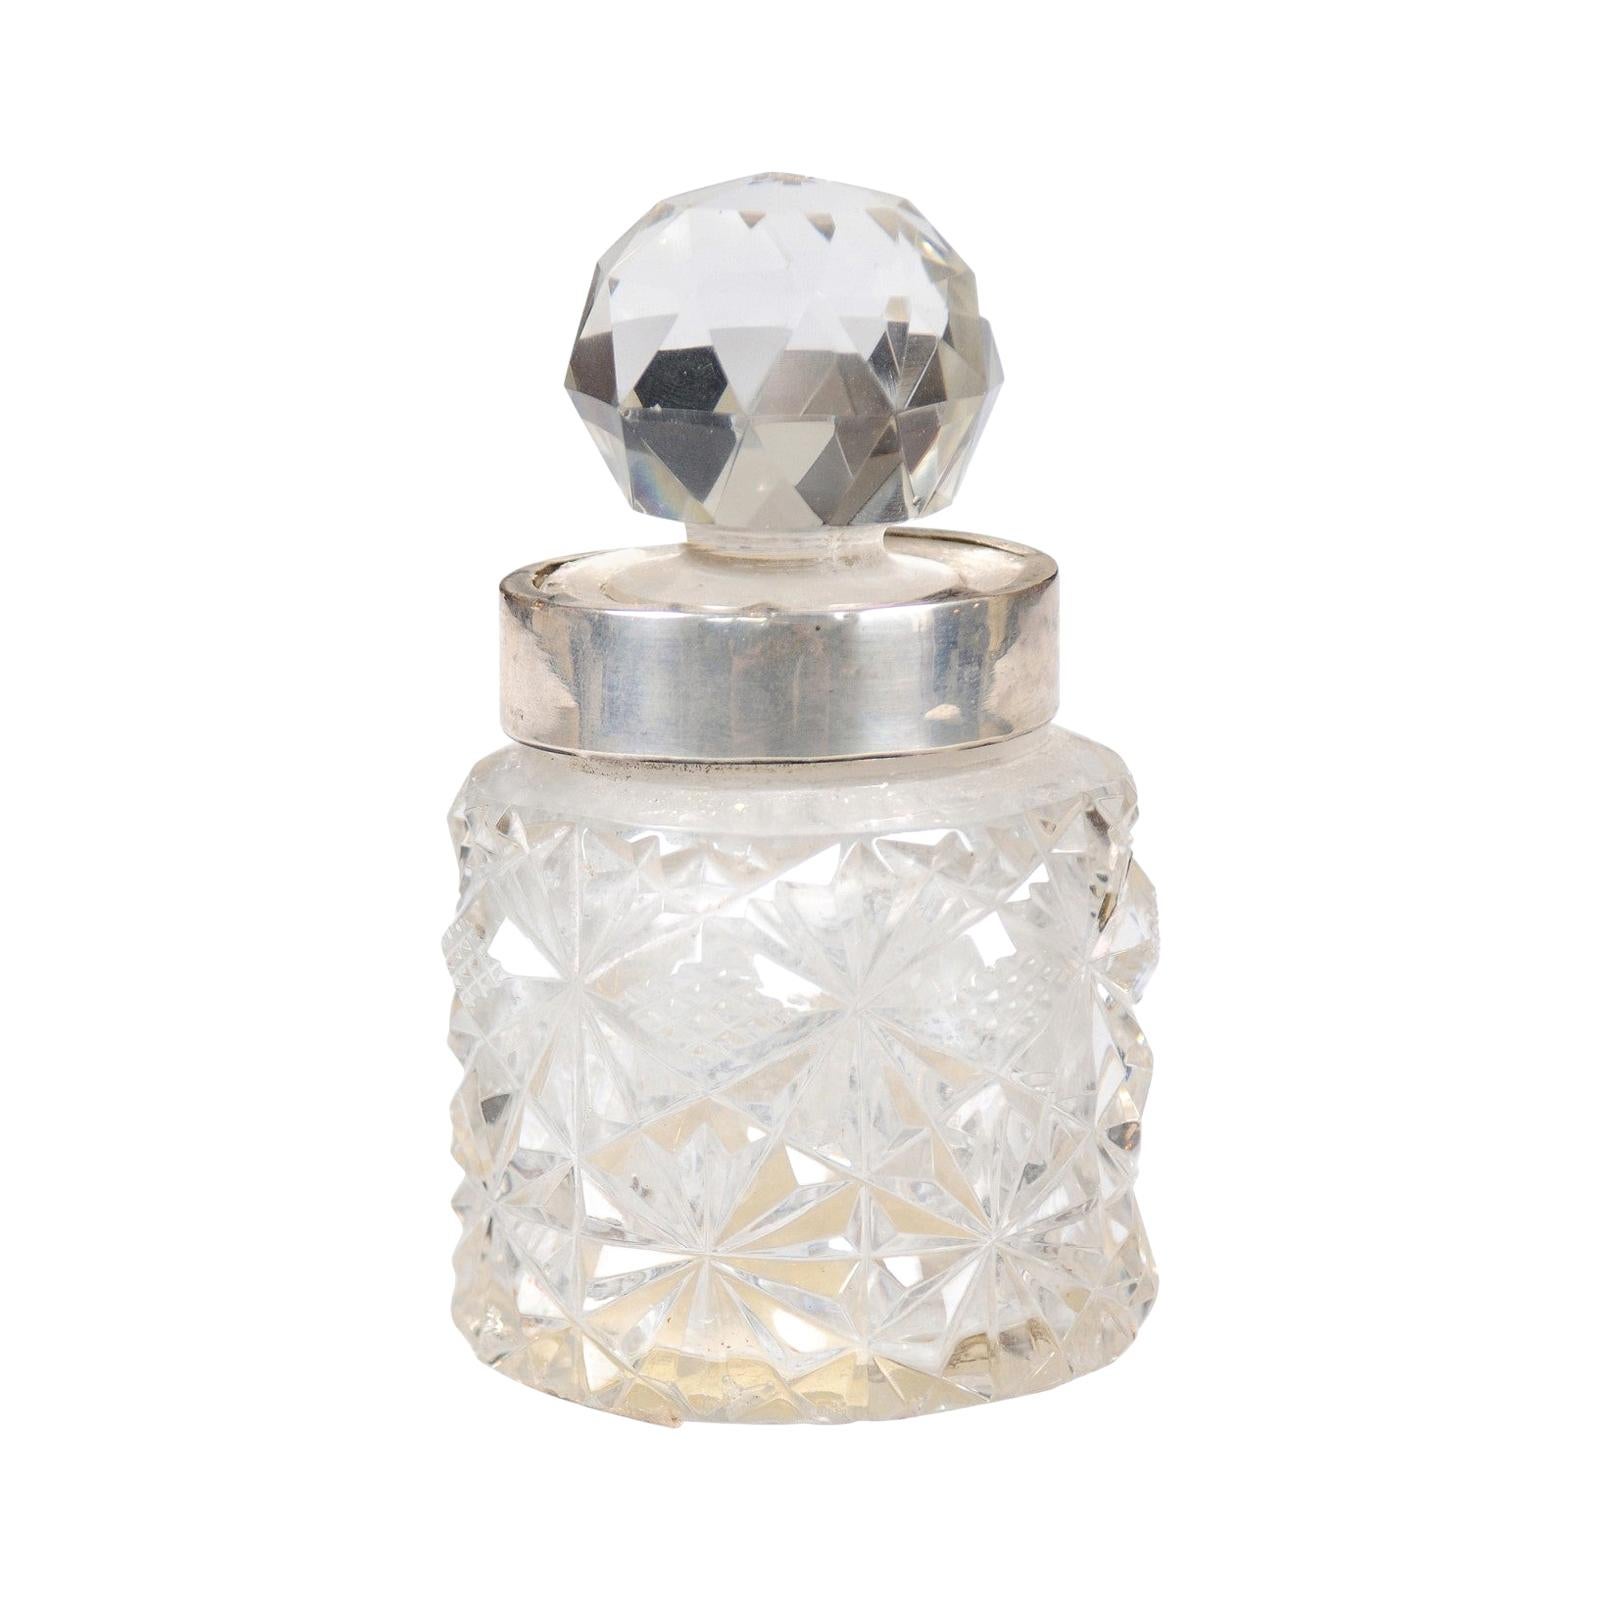 Pichet anglais du 19ème siècle en cristal et argent avec motifs de diamants et bouchon à boule